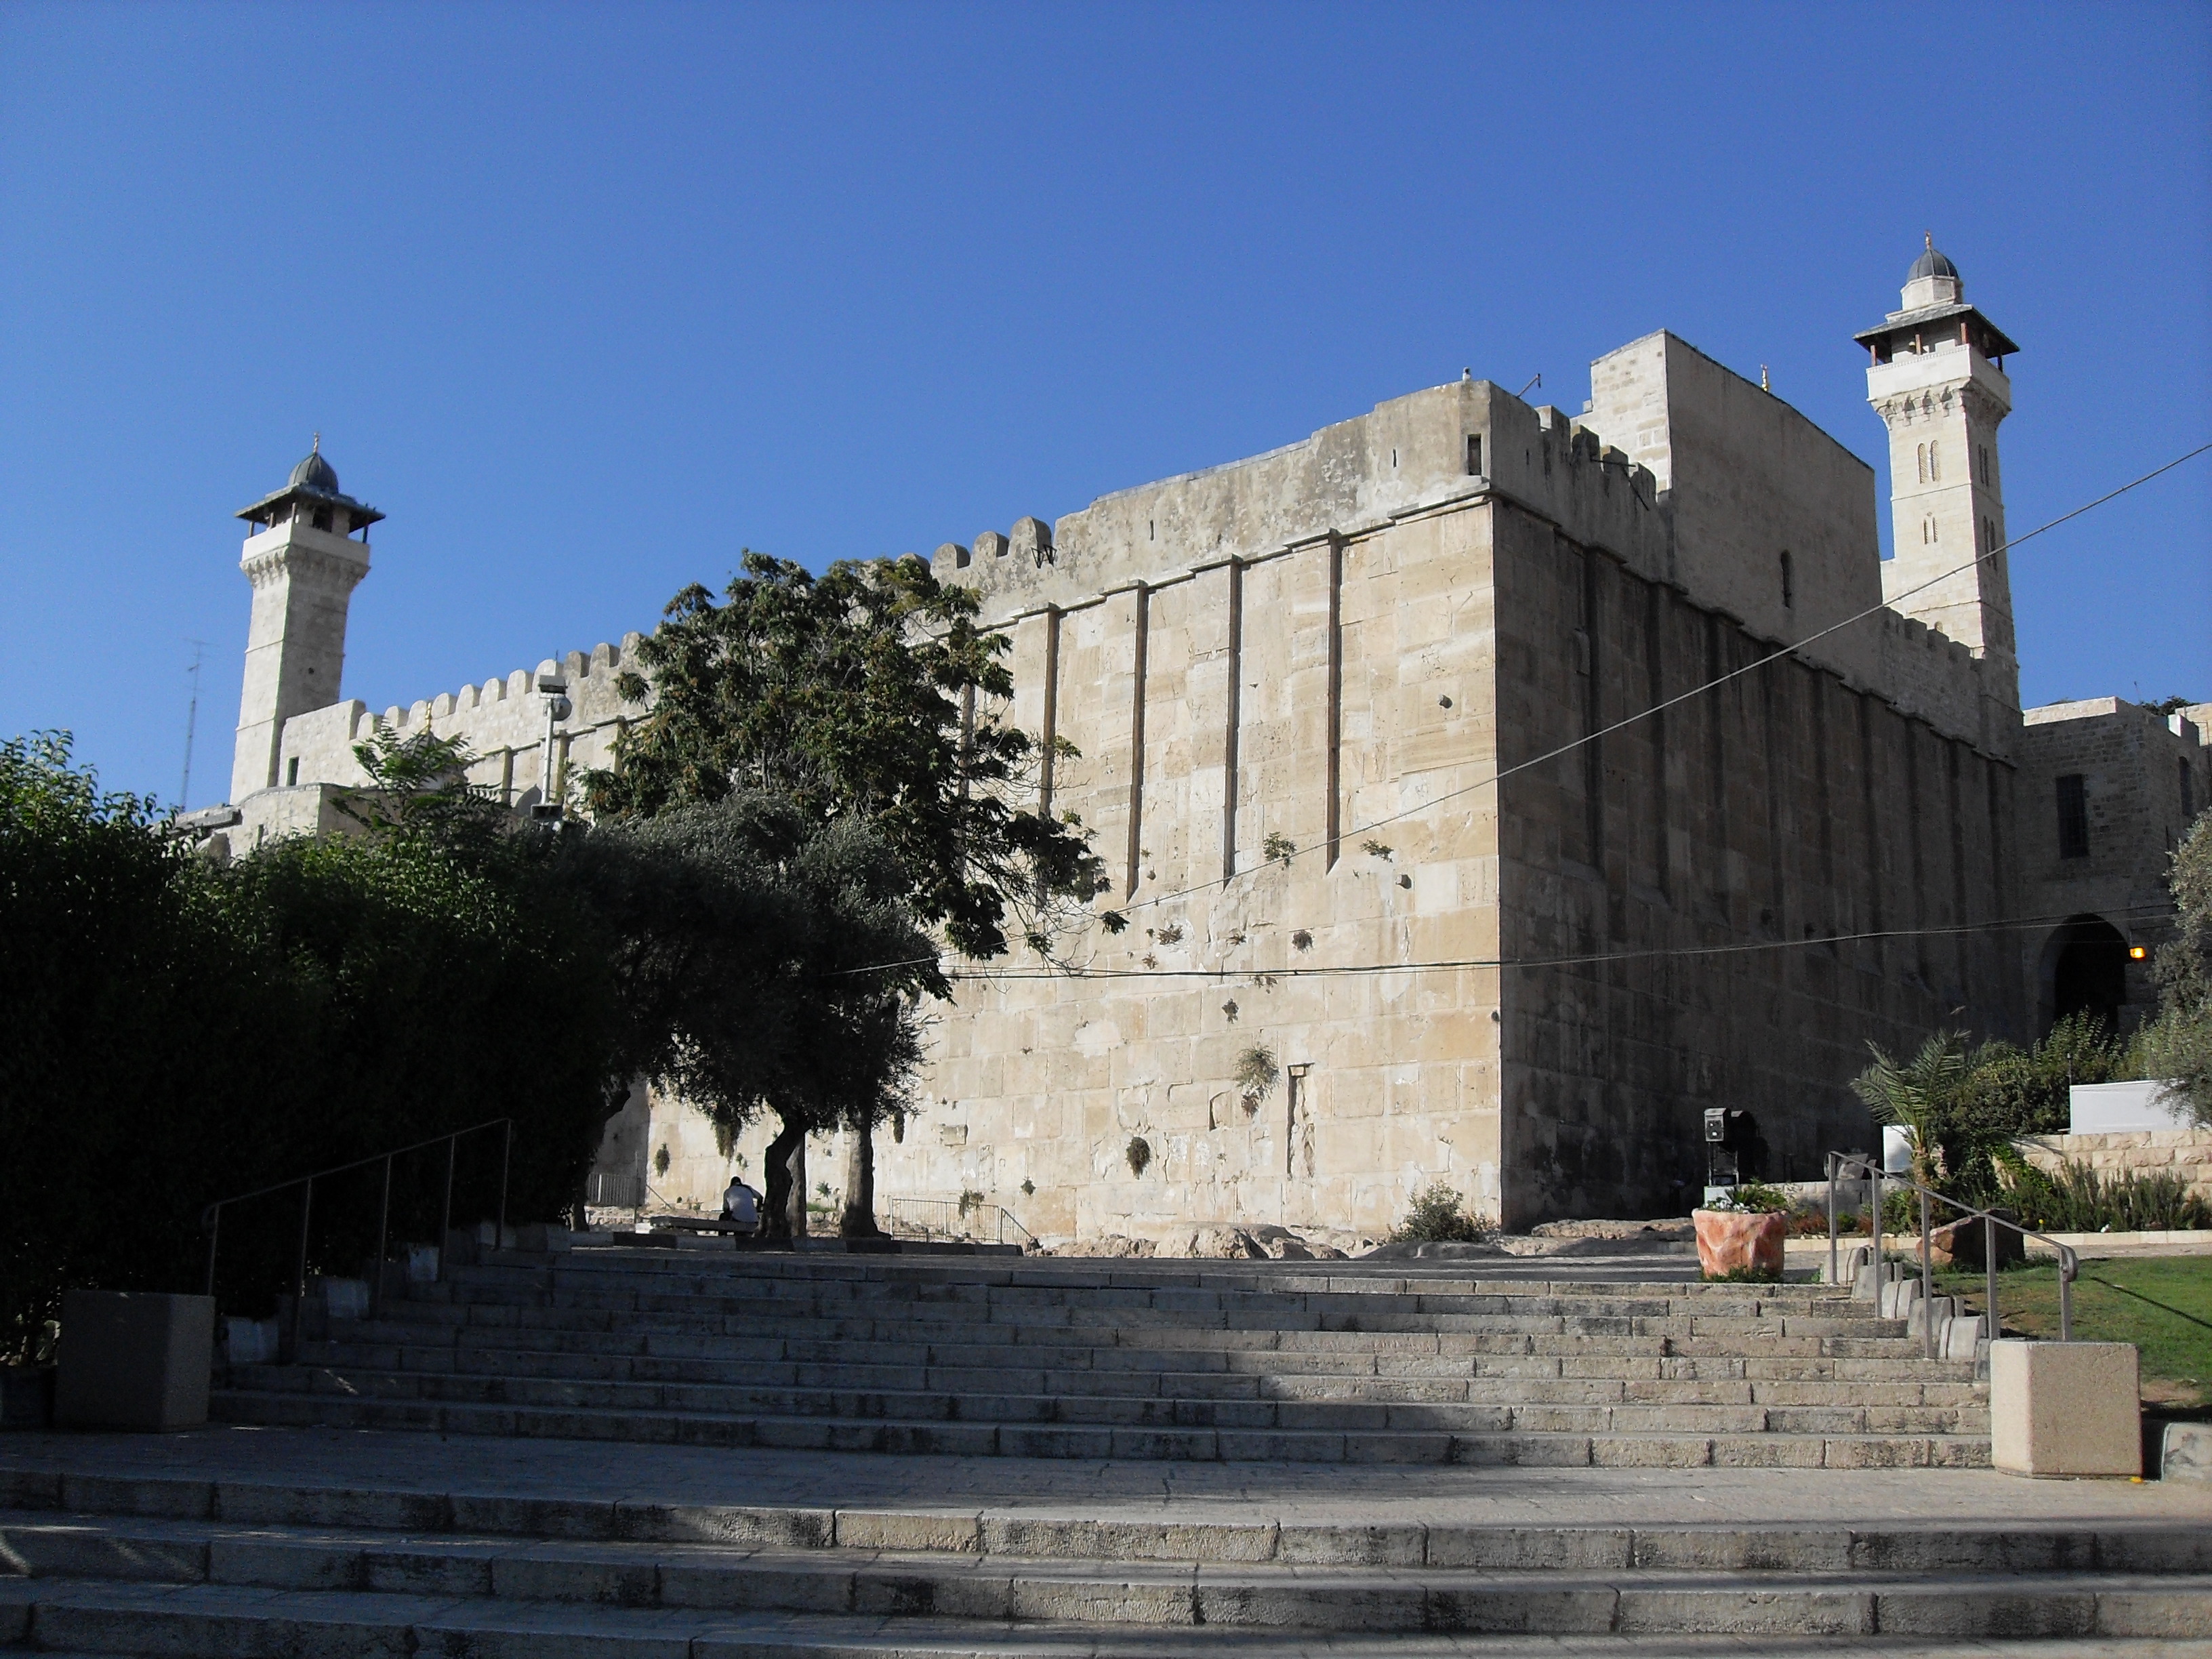 Egy késelő súlyosan megsebesített egy izraelit Hebronban, agyonlőtték